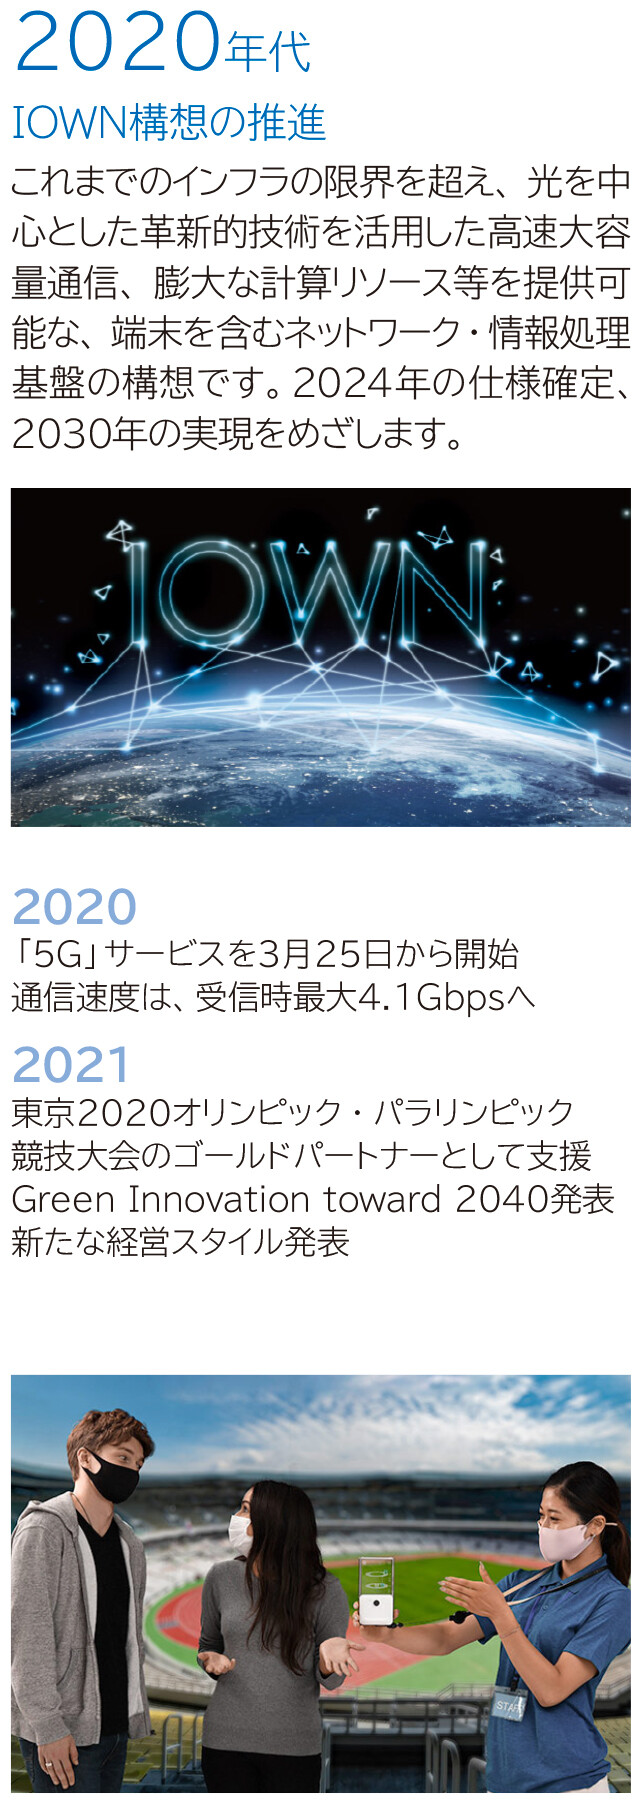 2020年代 IOWN構想の推進